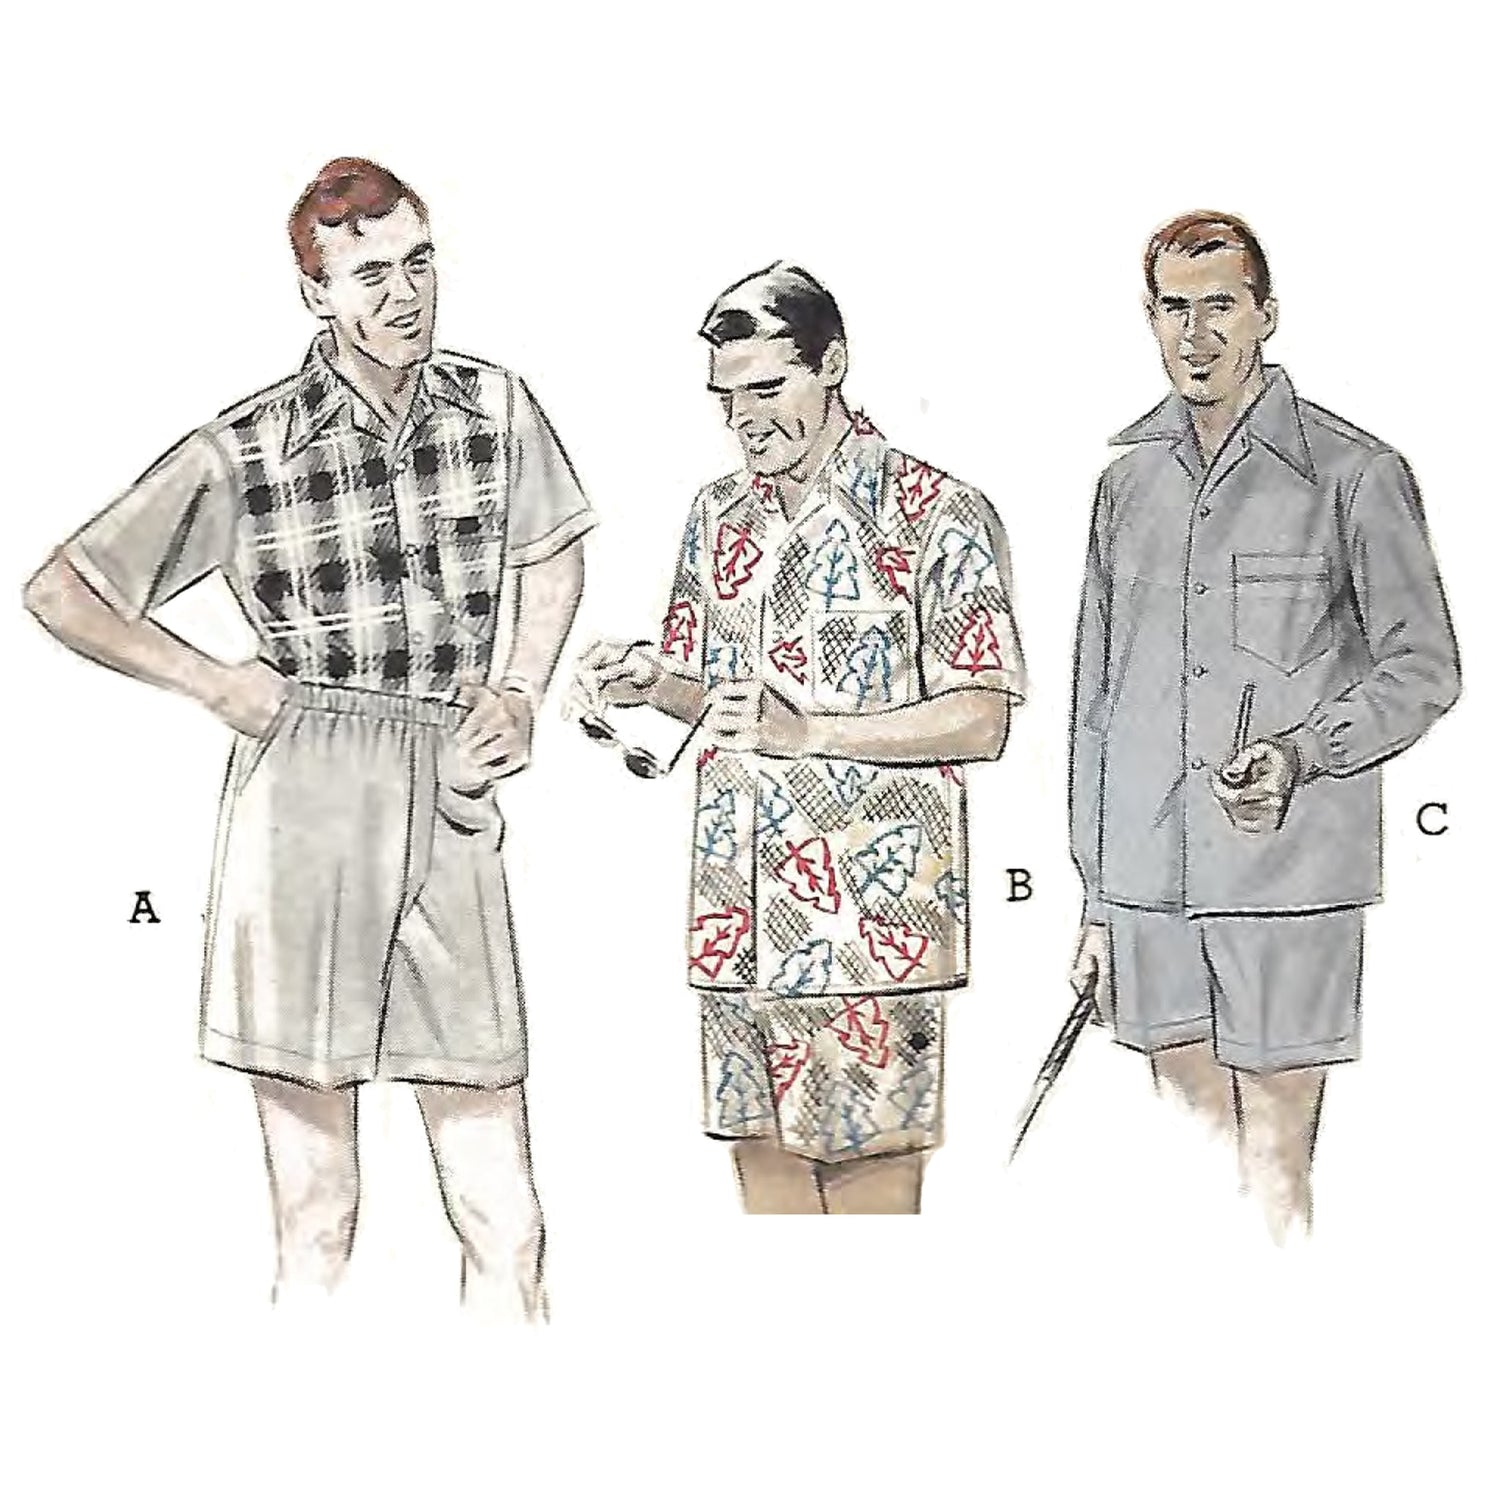 Men wearing shirts and shorts